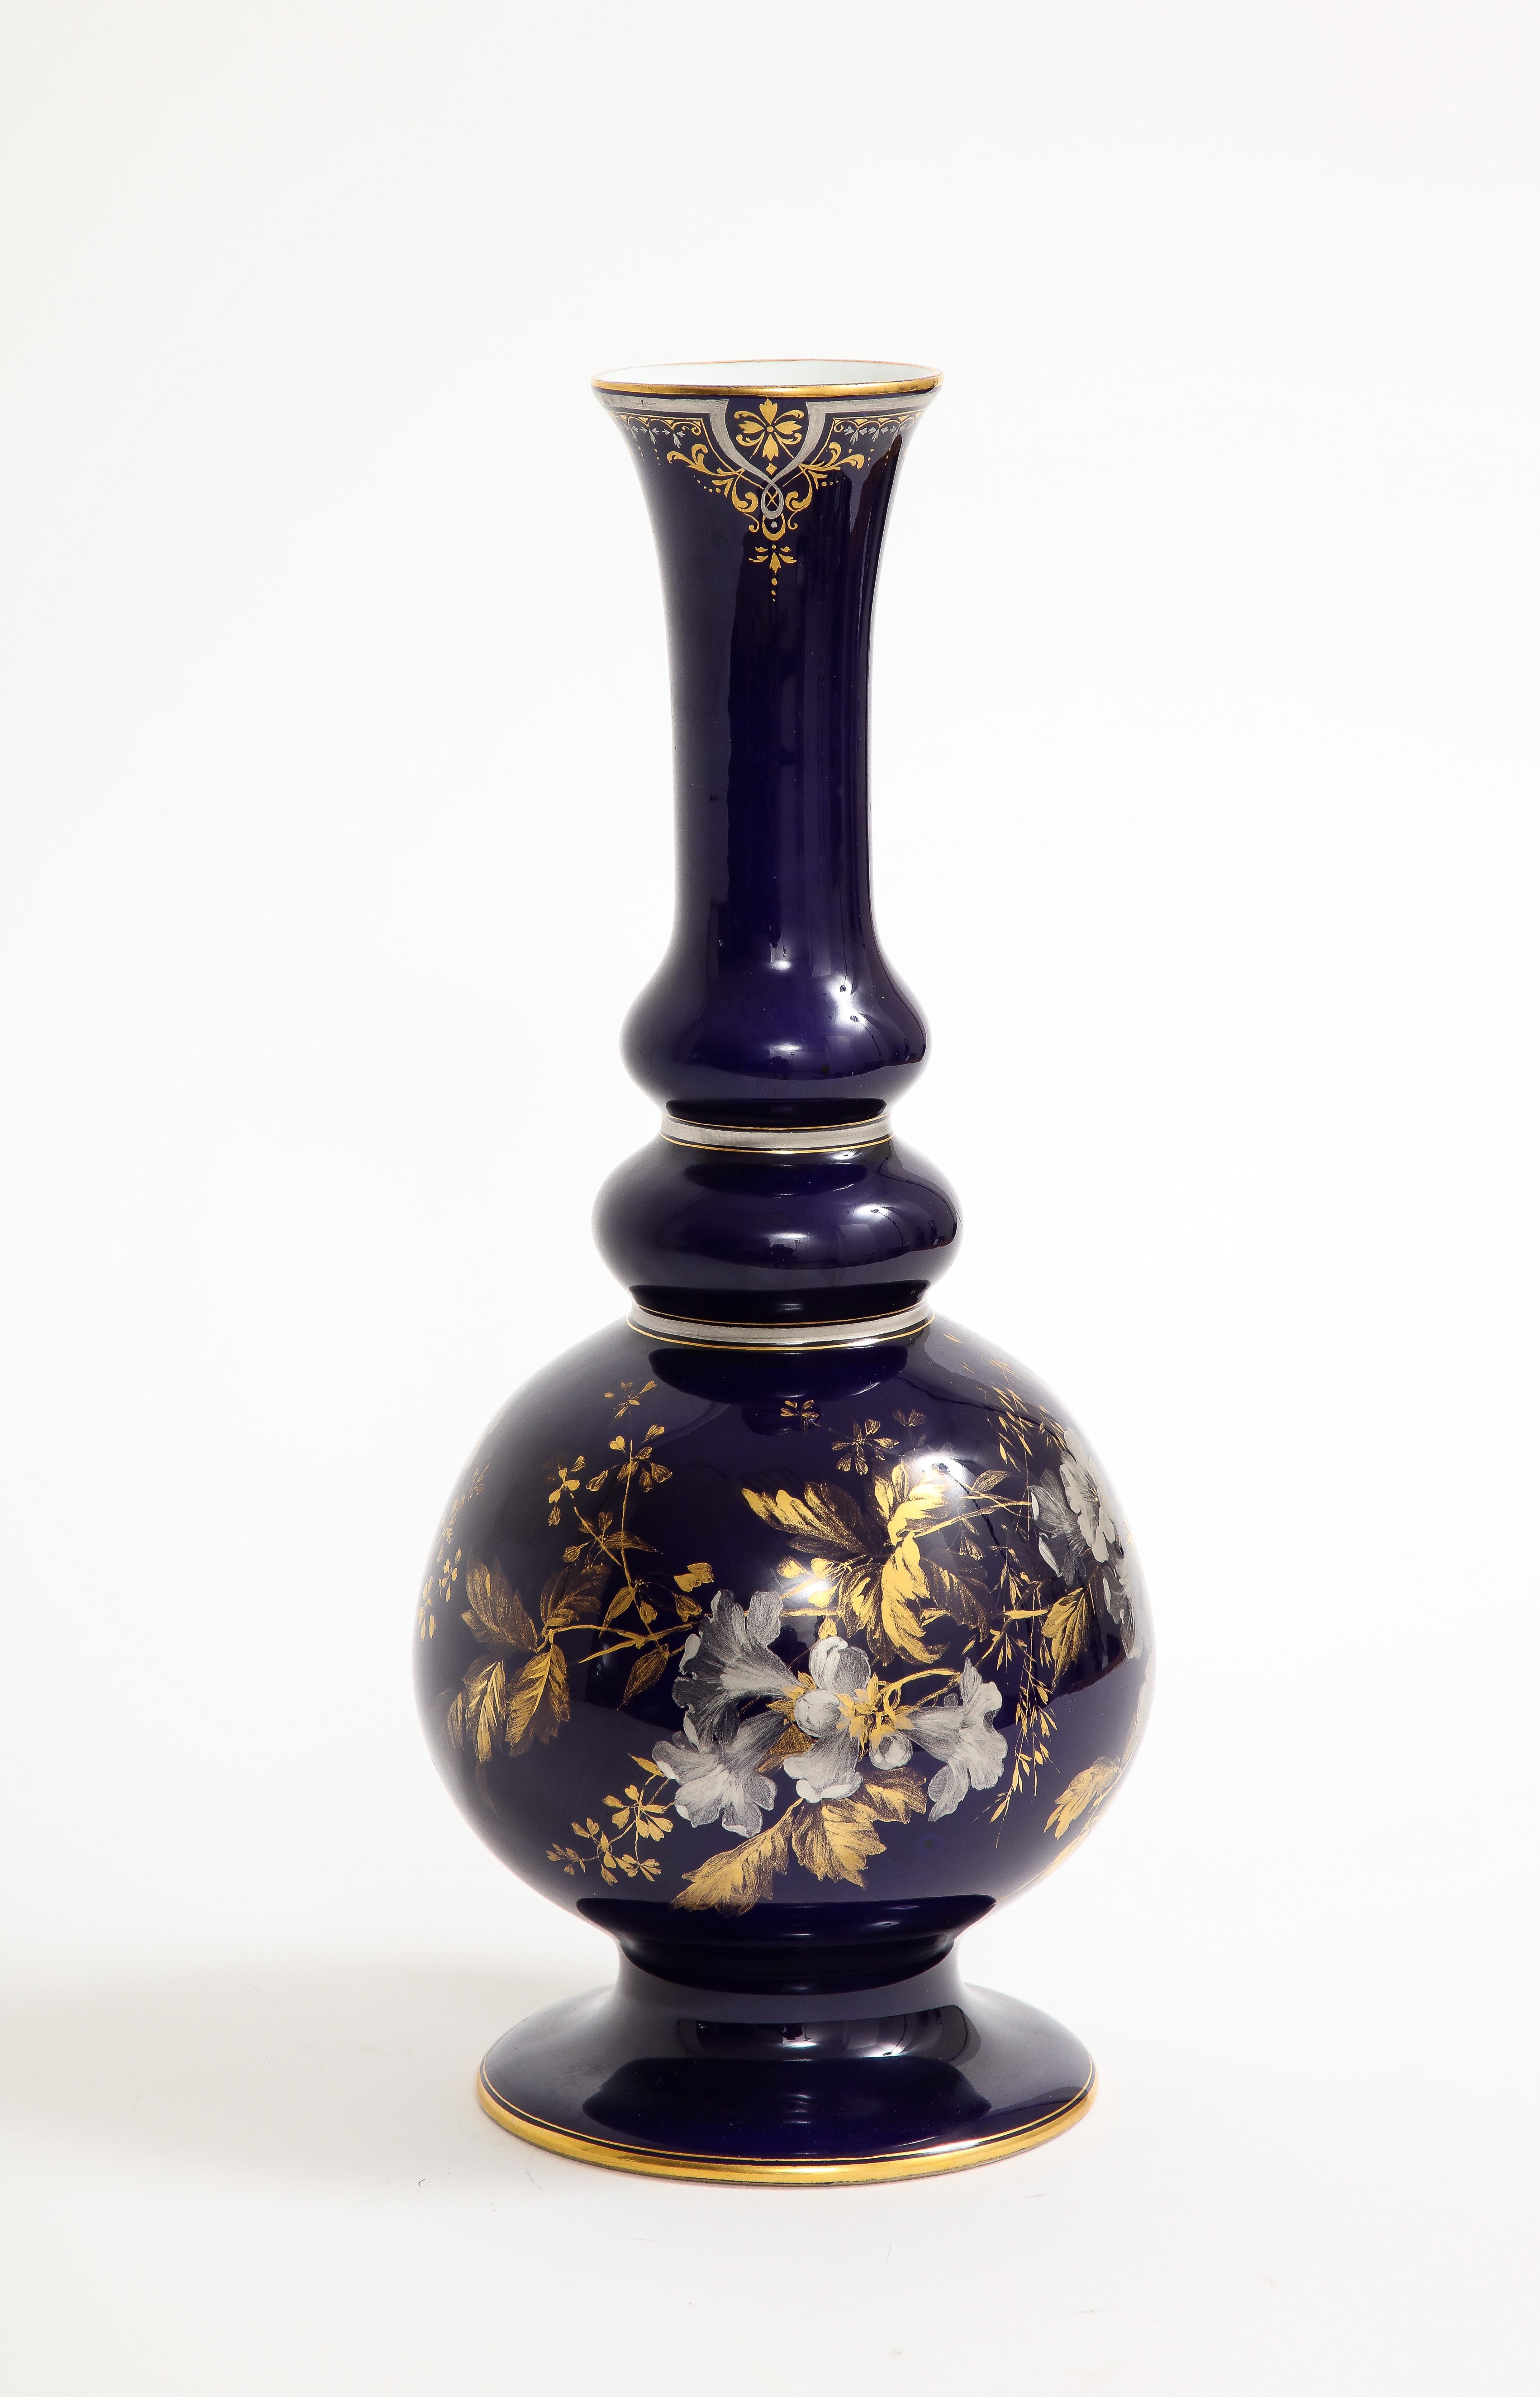 Très important et rare vase en porcelaine de Meissen à fond bleu cobalt avec décor peint à la main en platine et en or.  Exquis vase en porcelaine de Meissen du XIXe siècle à fond cobalt, orné de délicates fleurs diaphanes en platine peintes à la